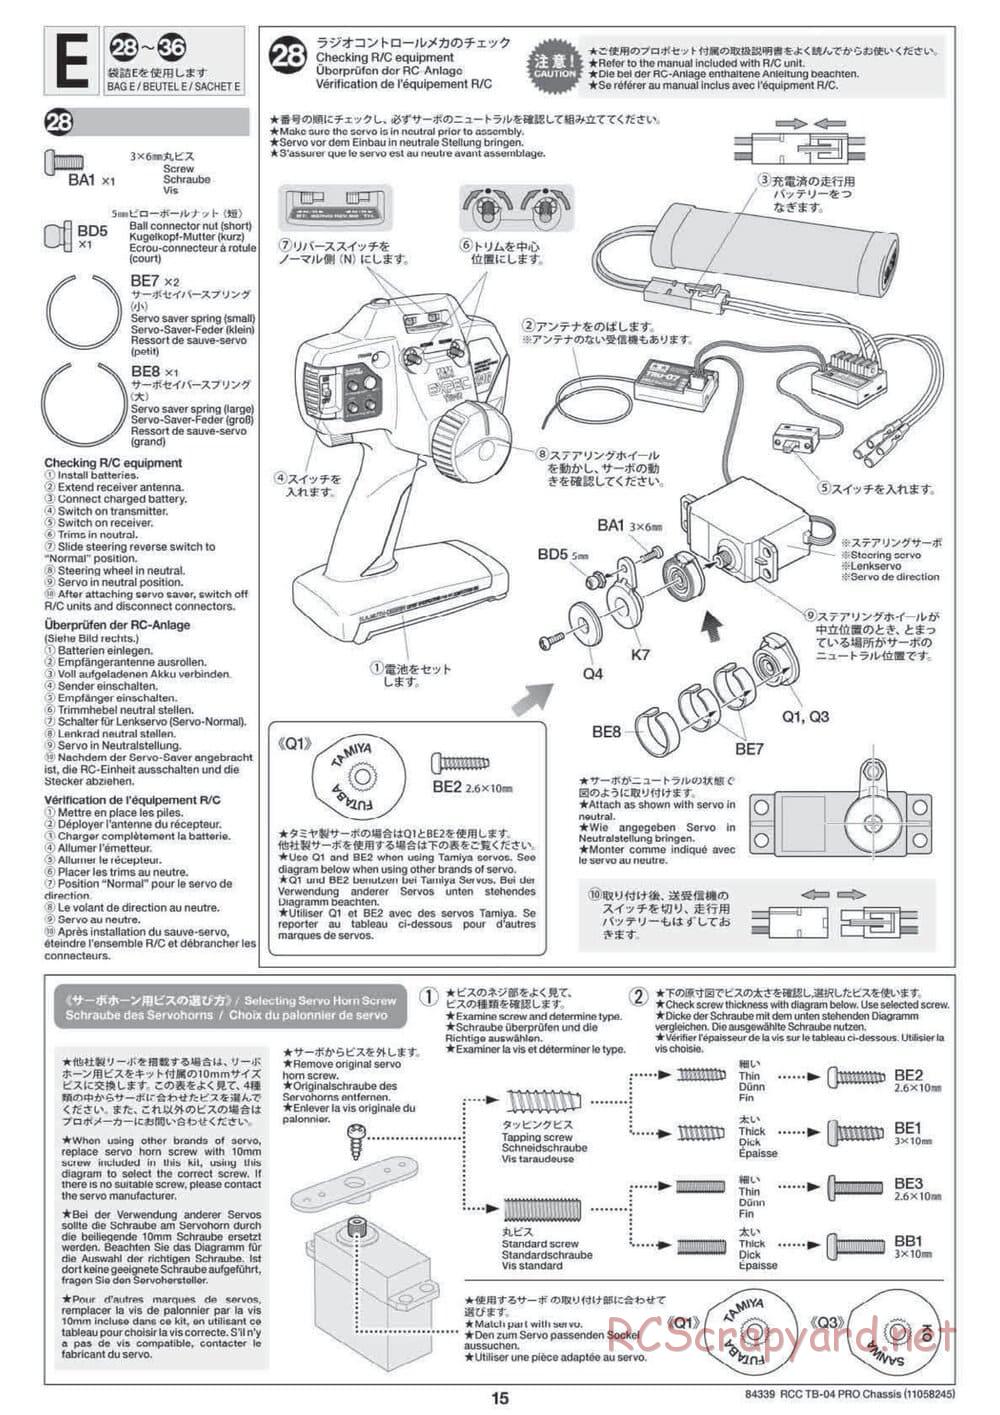 Tamiya - TB-04 Pro Chassis - Manual - Page 15